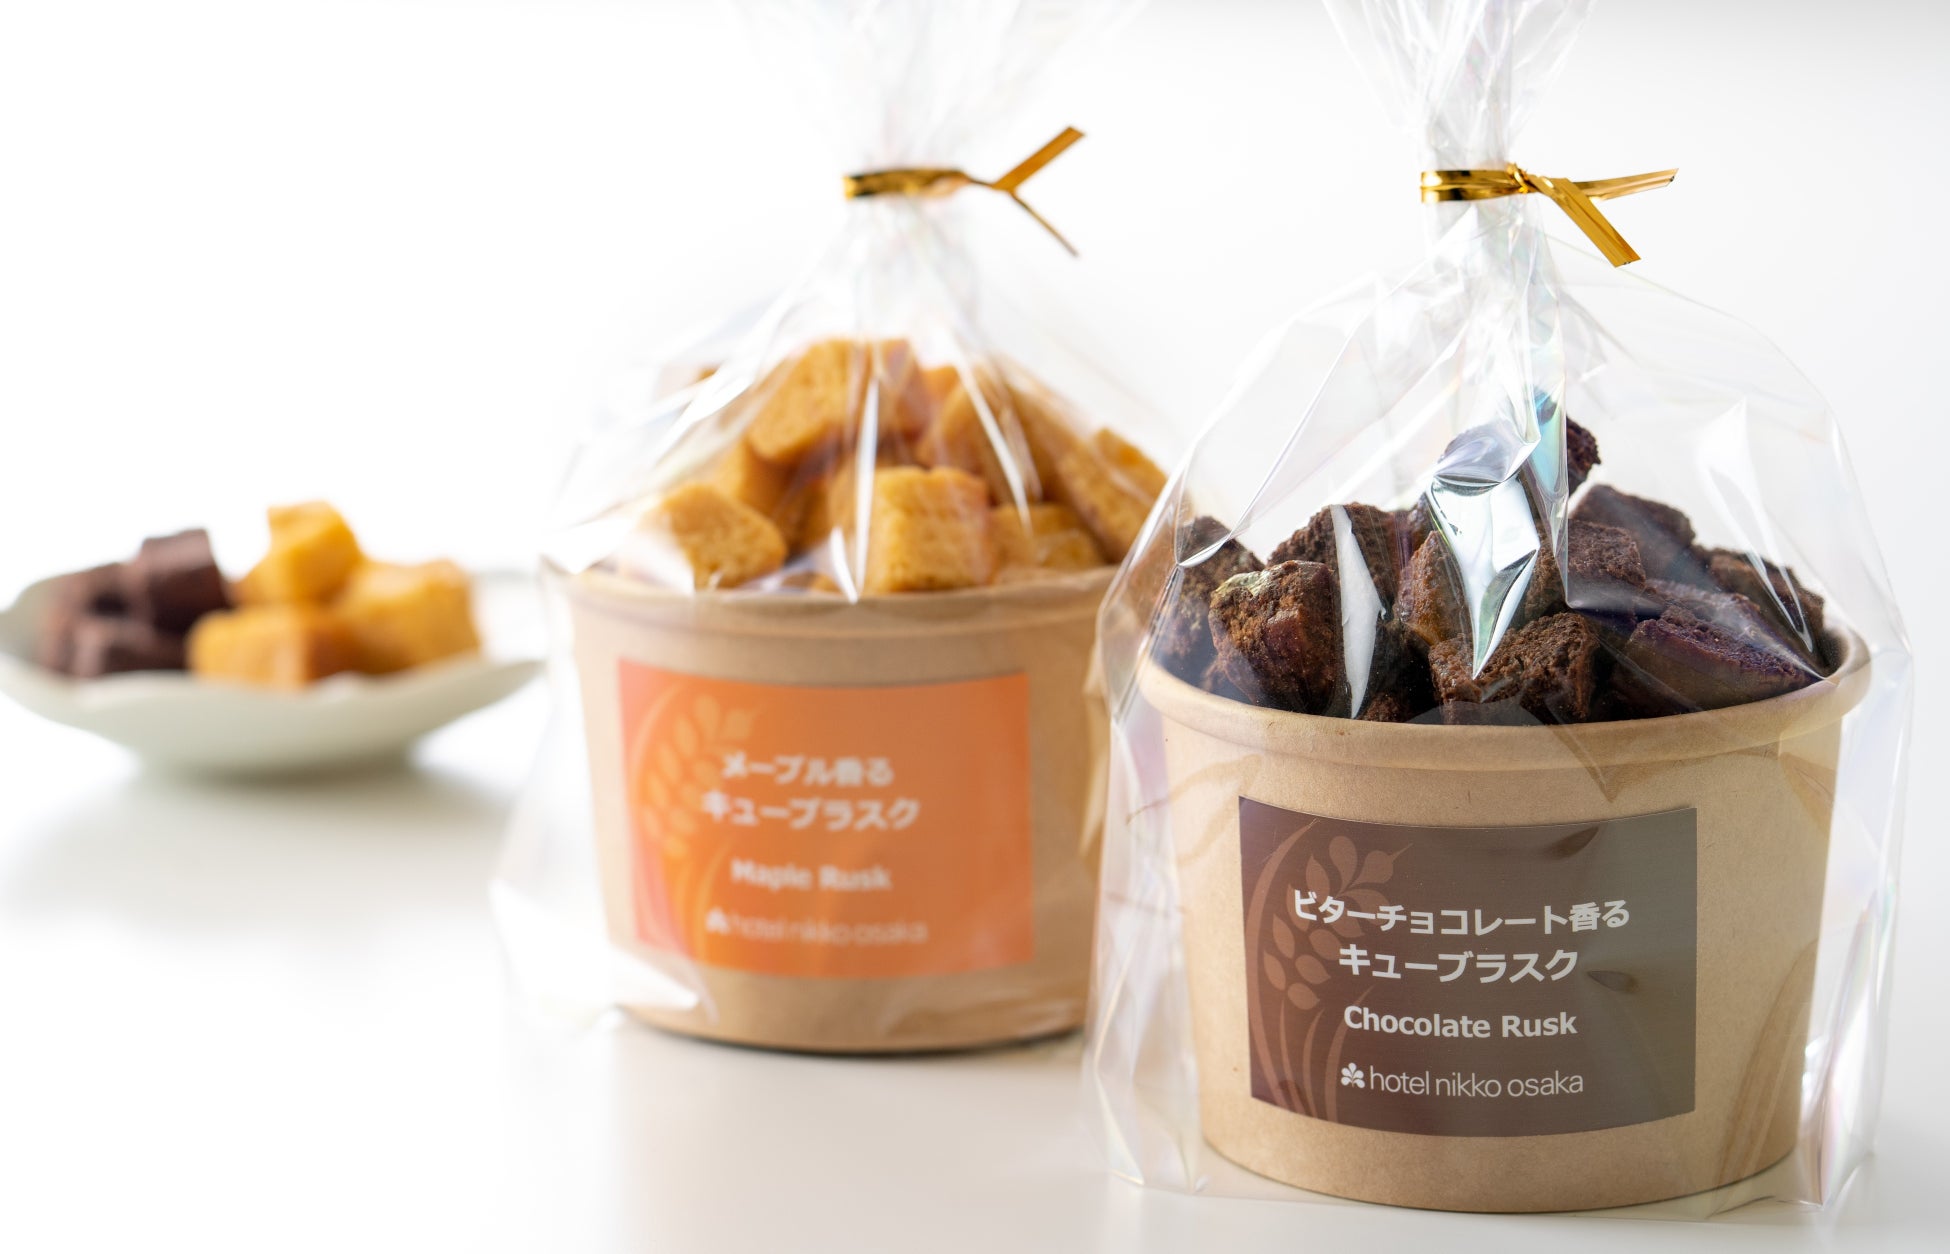 【ホテル日航大阪】テイクアウトの食パンをリメイクしたラスクに新商品「ビターチョコレート香るキューブラスク」12月11日販売開始